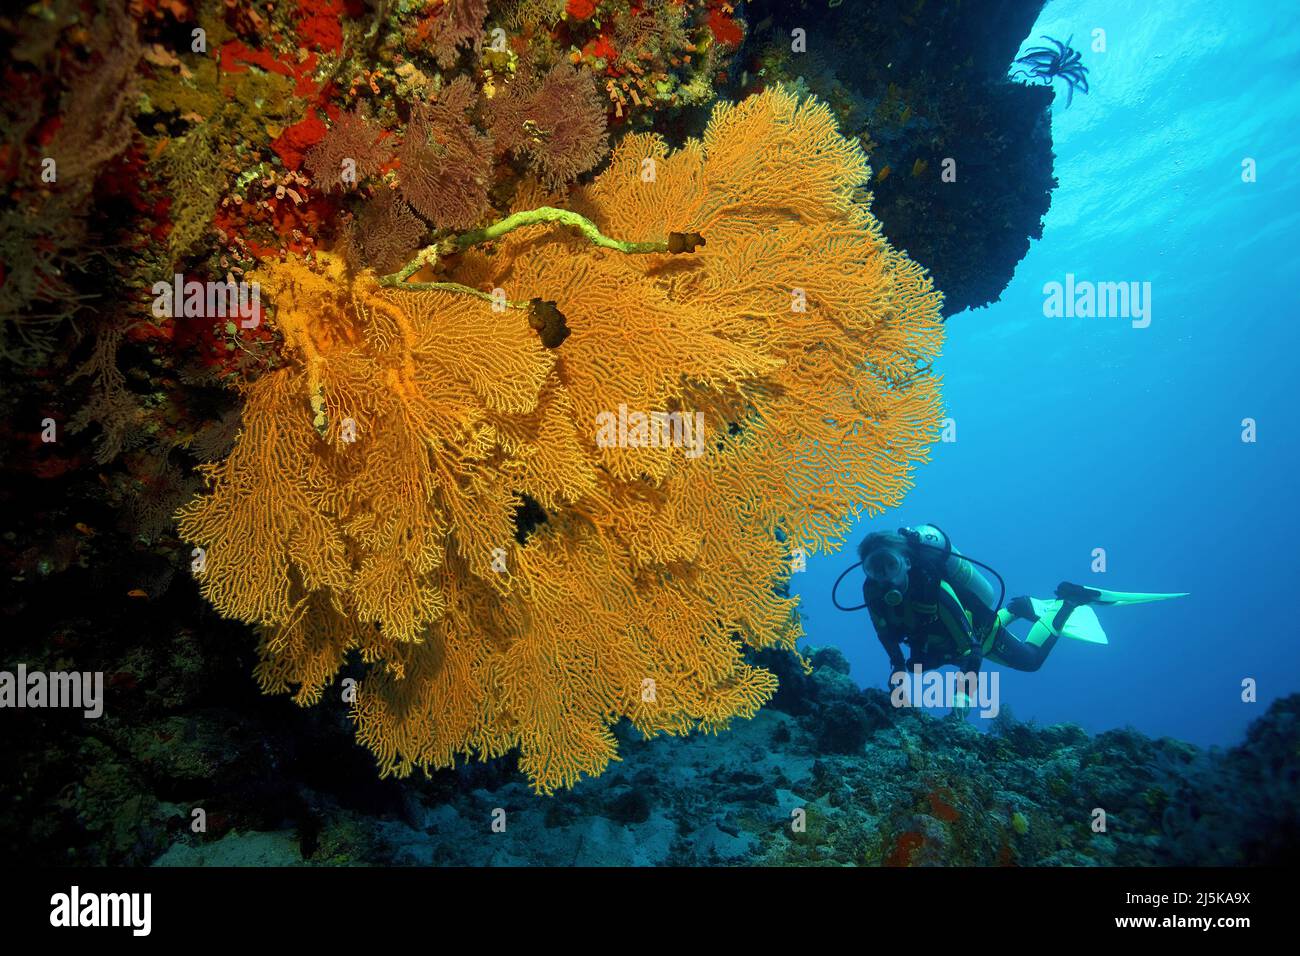 Plongée sous-marine derrière un ventilateur de mer géant (Gorgonacea), Maldives, océan Indien, Asie Banque D'Images